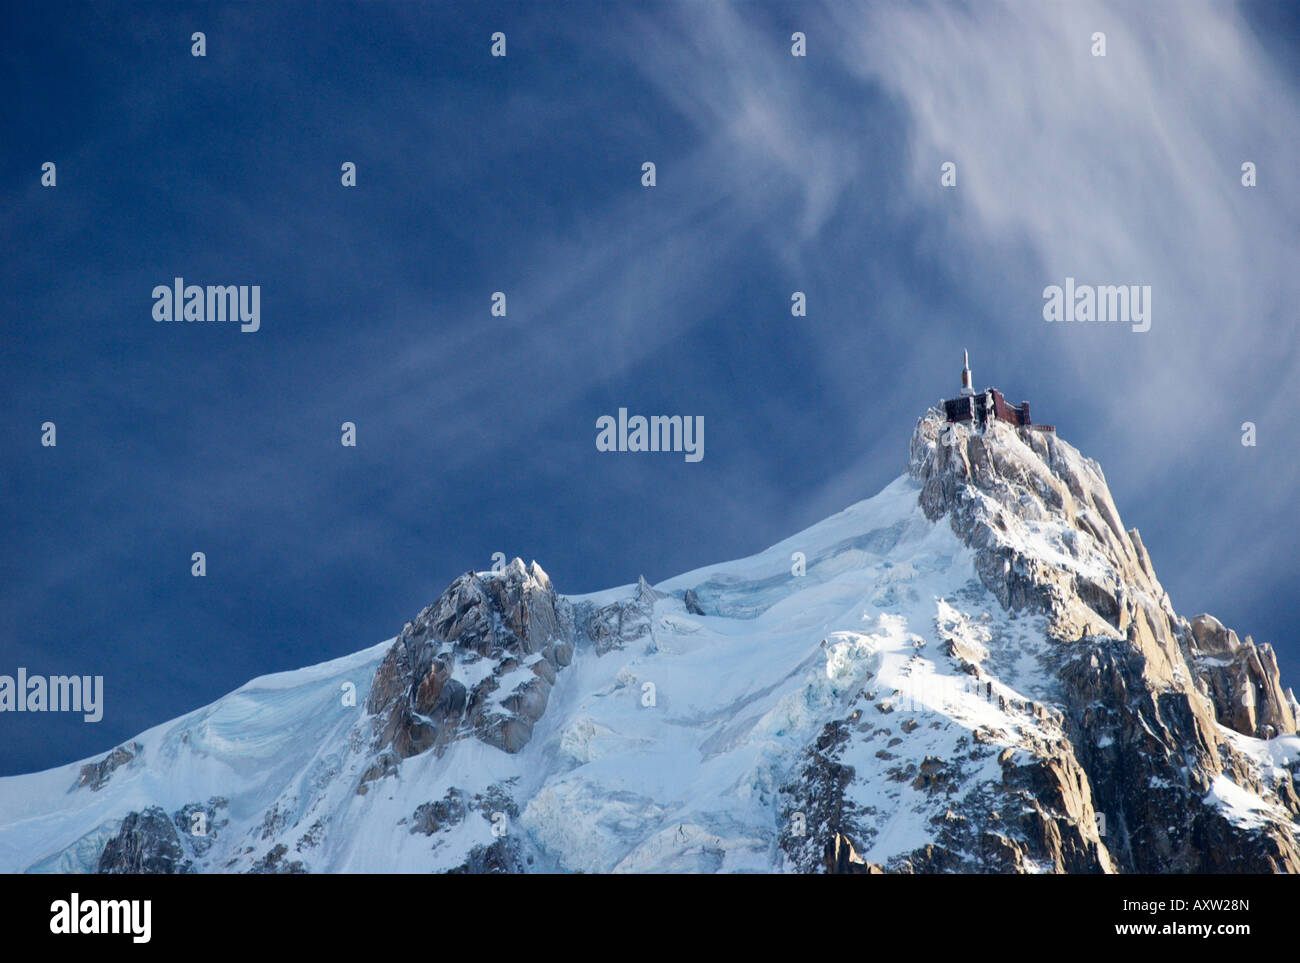 Venti alti e spettacolari nuvole sopra l'ago congelate di Aiguille du Midi (3842m), Chamonix-Mont Blanc, Francia Foto Stock